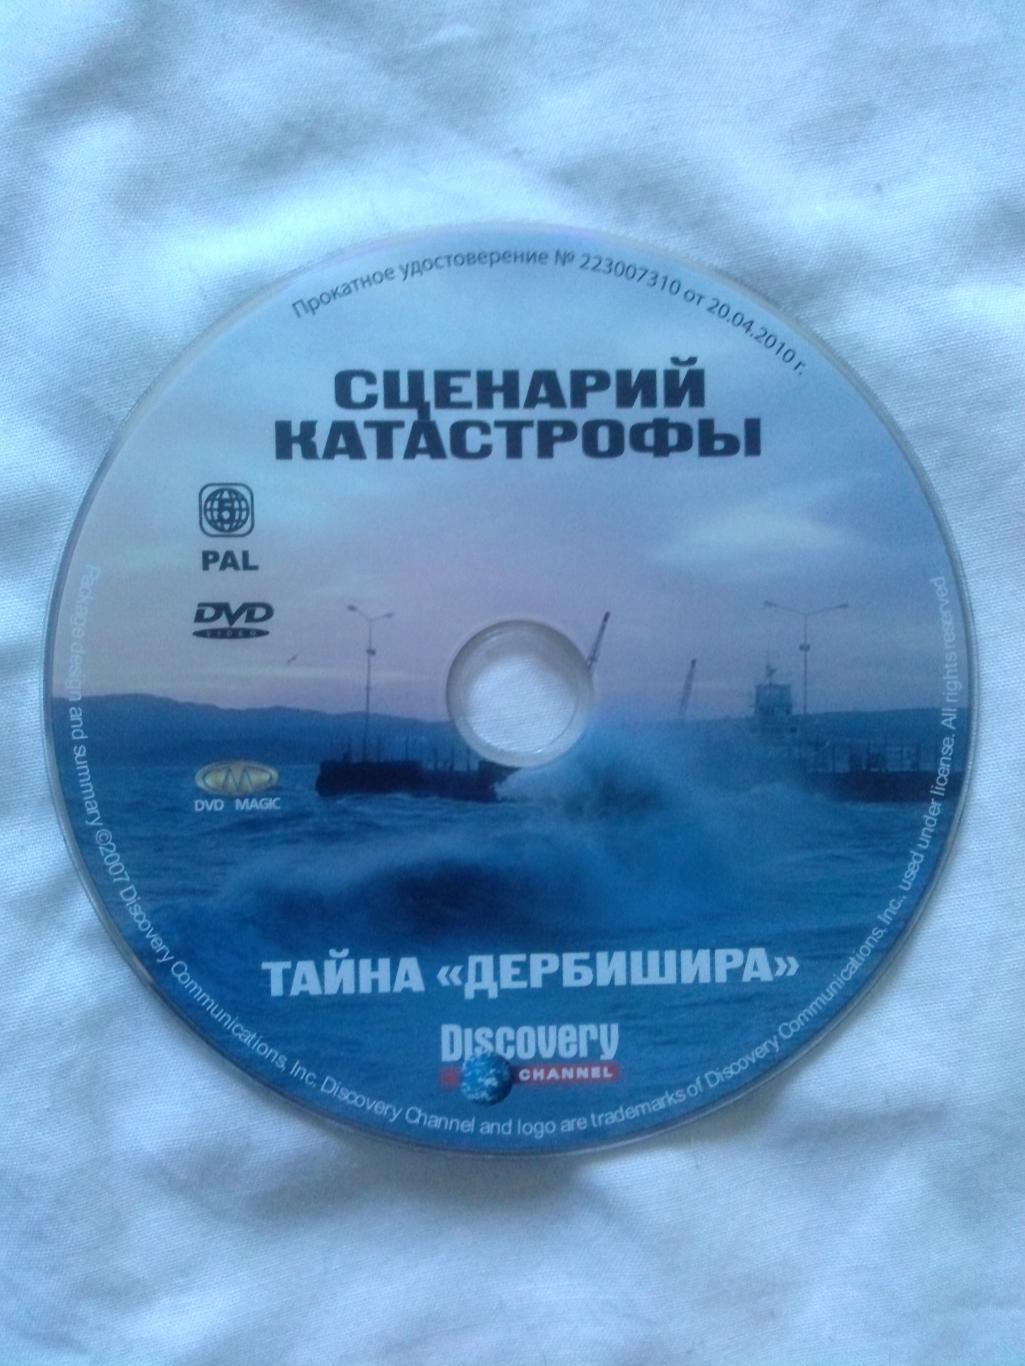 DVD Discovery лицензия документальное кино Сценарий катастрофы Тайна Дербишира 3